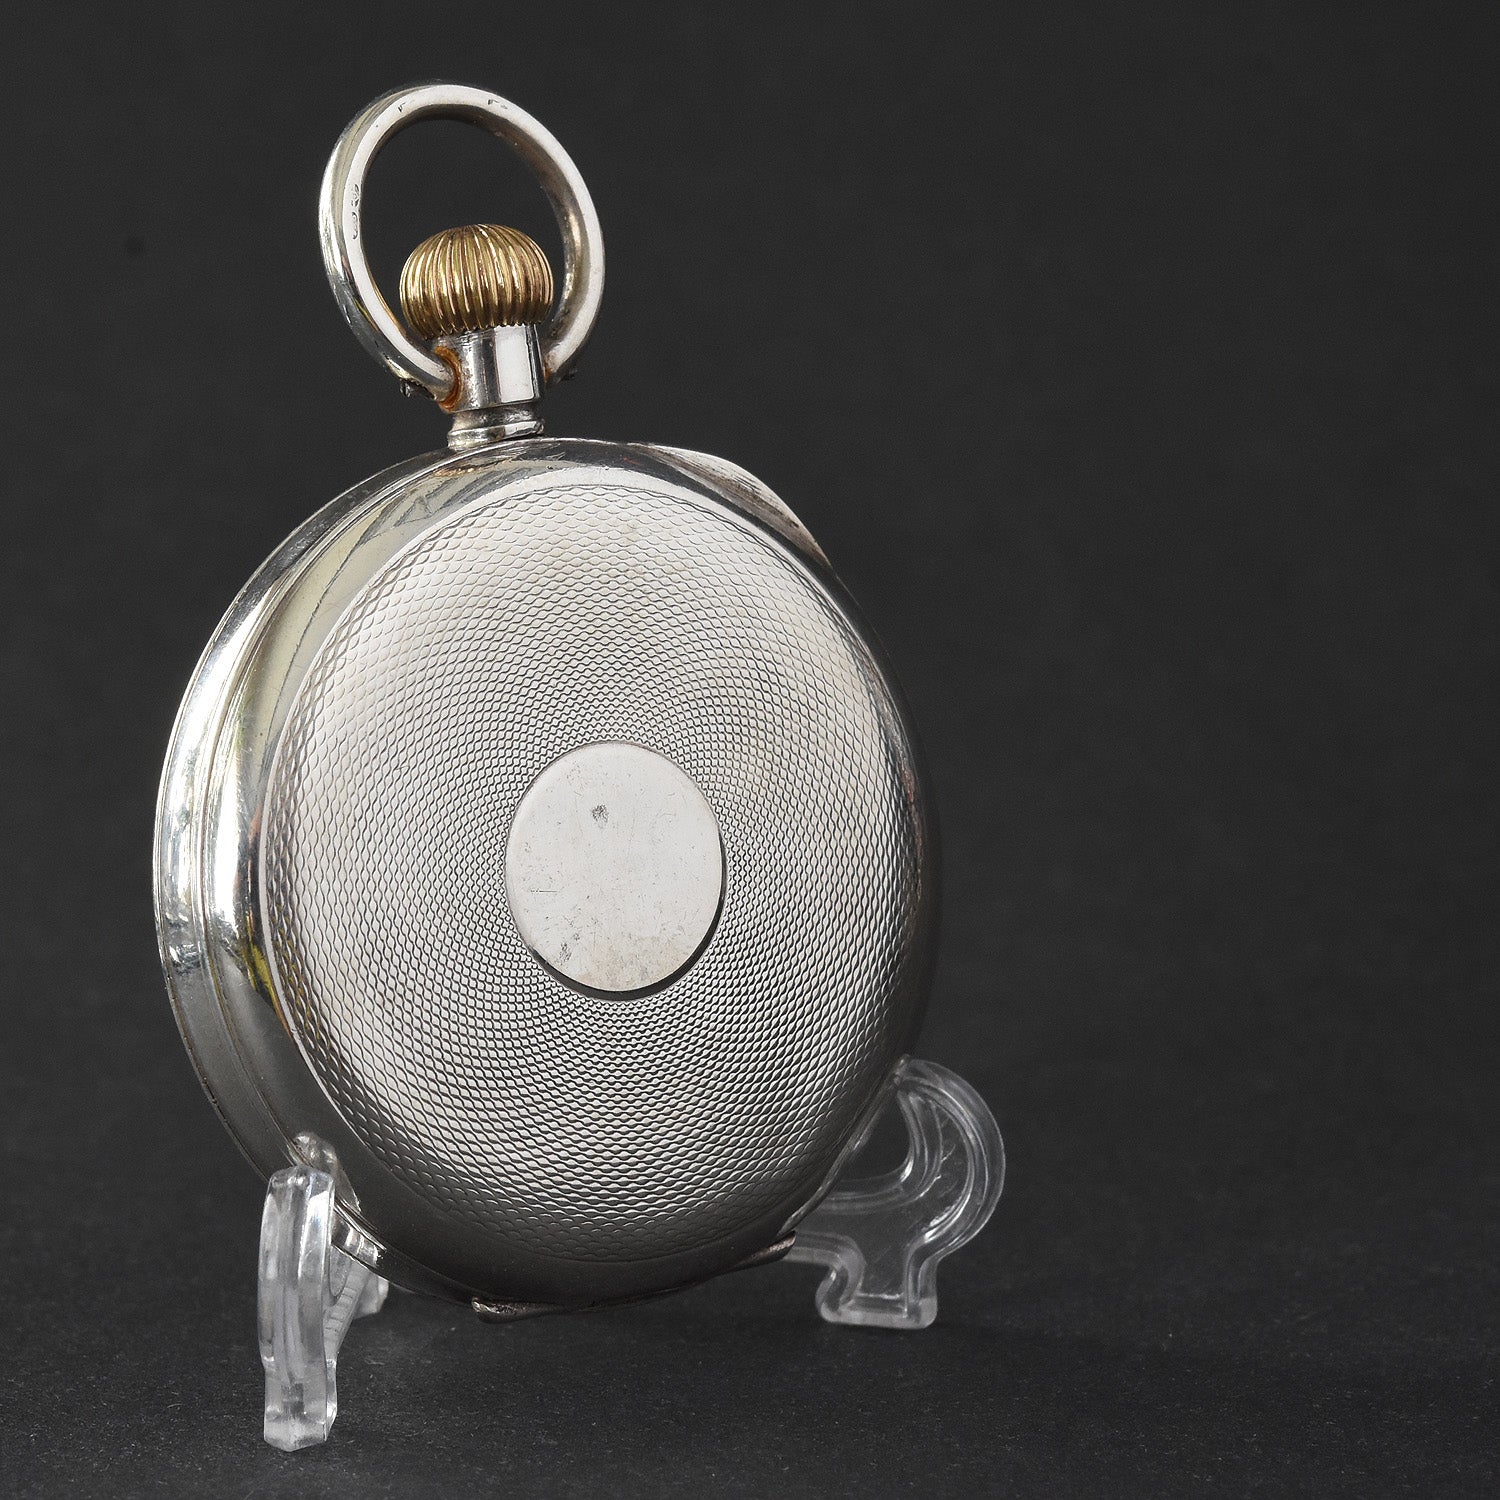 1911 Sterling Silver Gents Swiss Pocket Watch